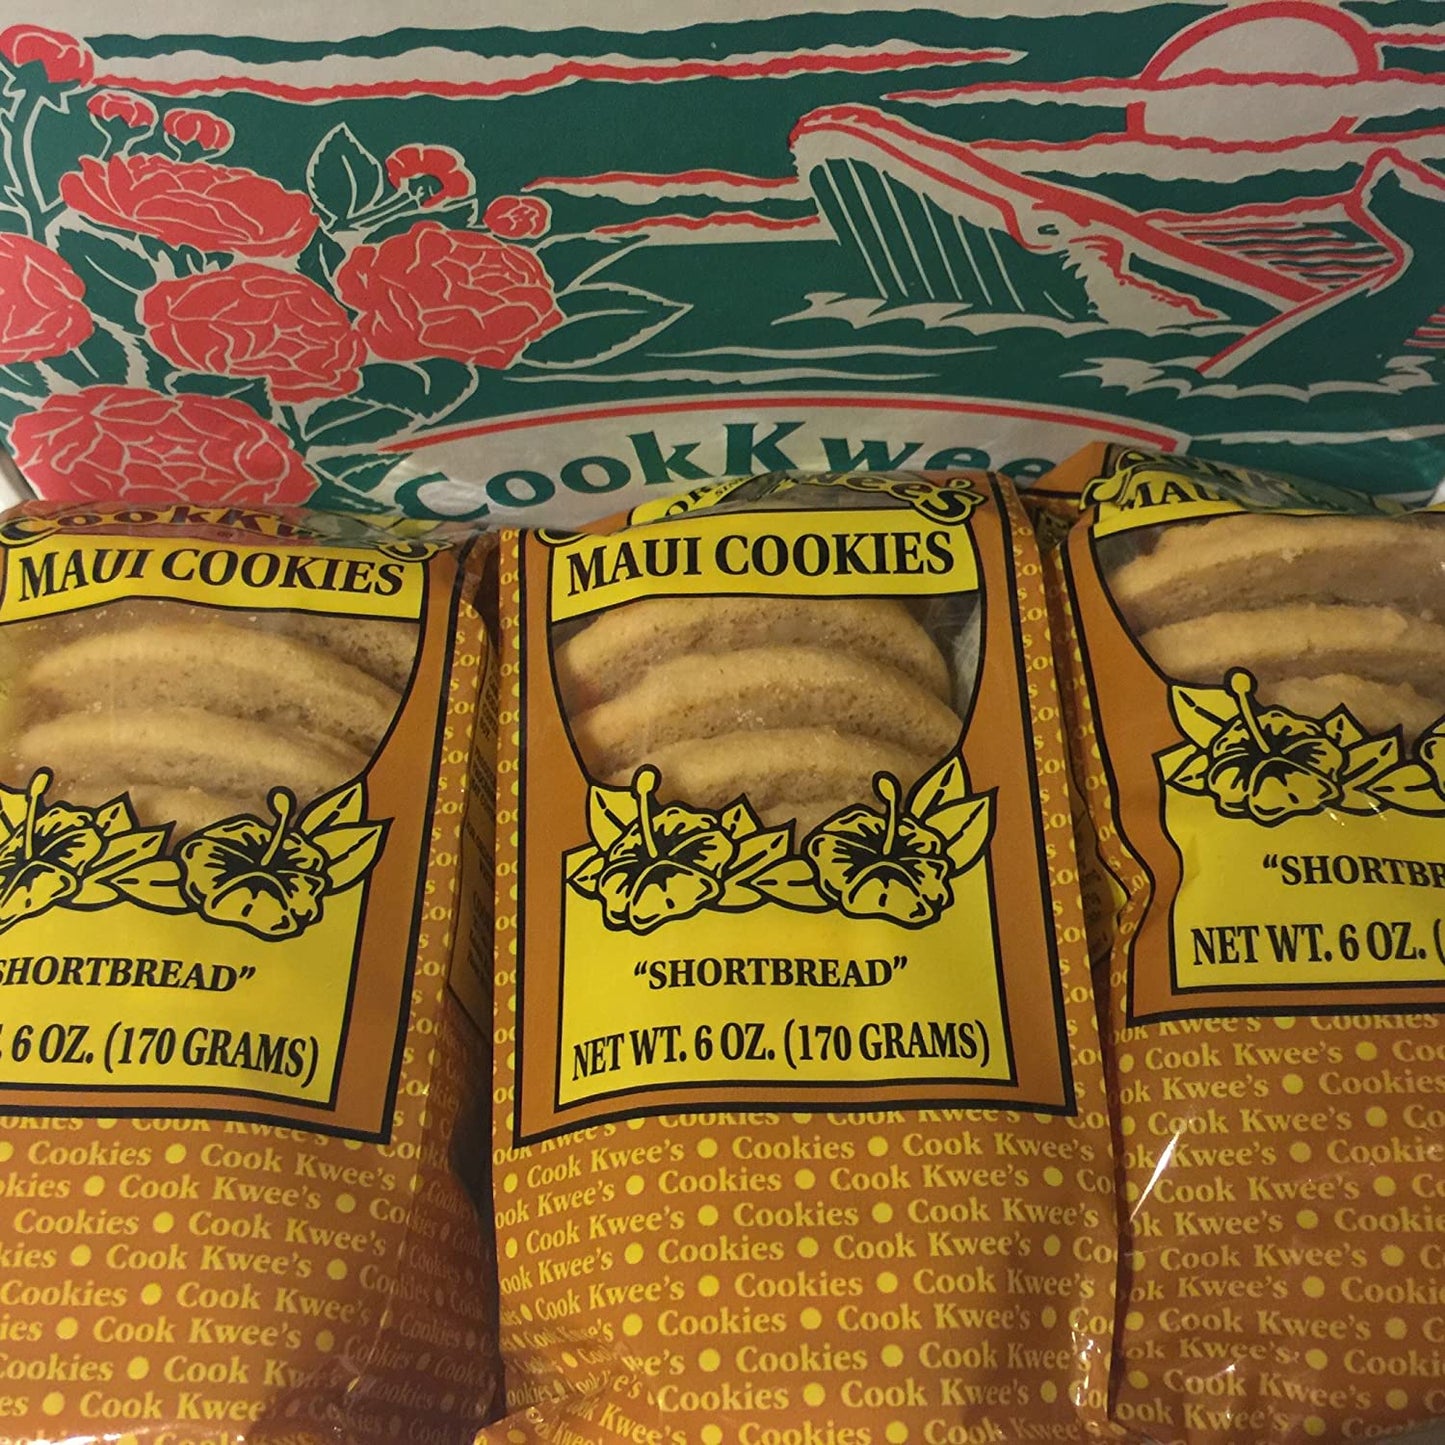 The Original Maui CookKwees Cookies 3 Pack-6 oz. Each (Shortbread)